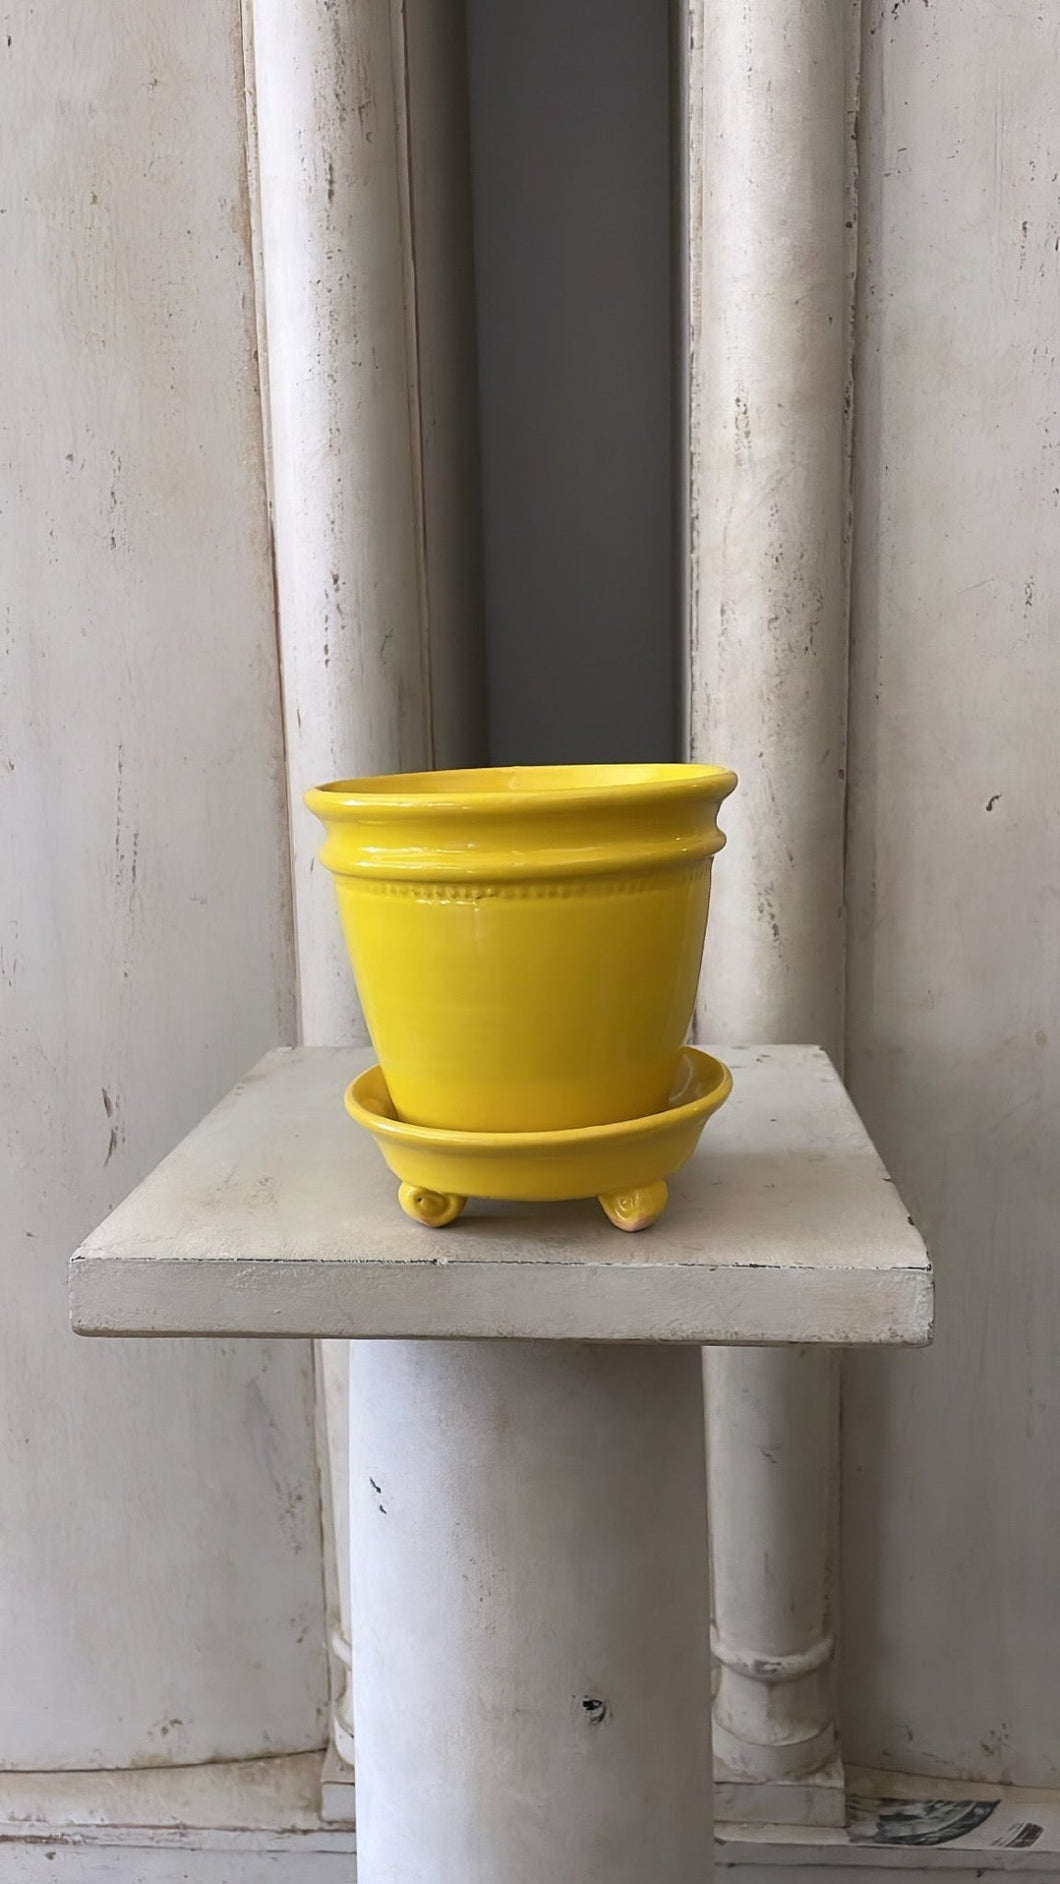 Faaborg Pot Yellow - Bon Ton goods